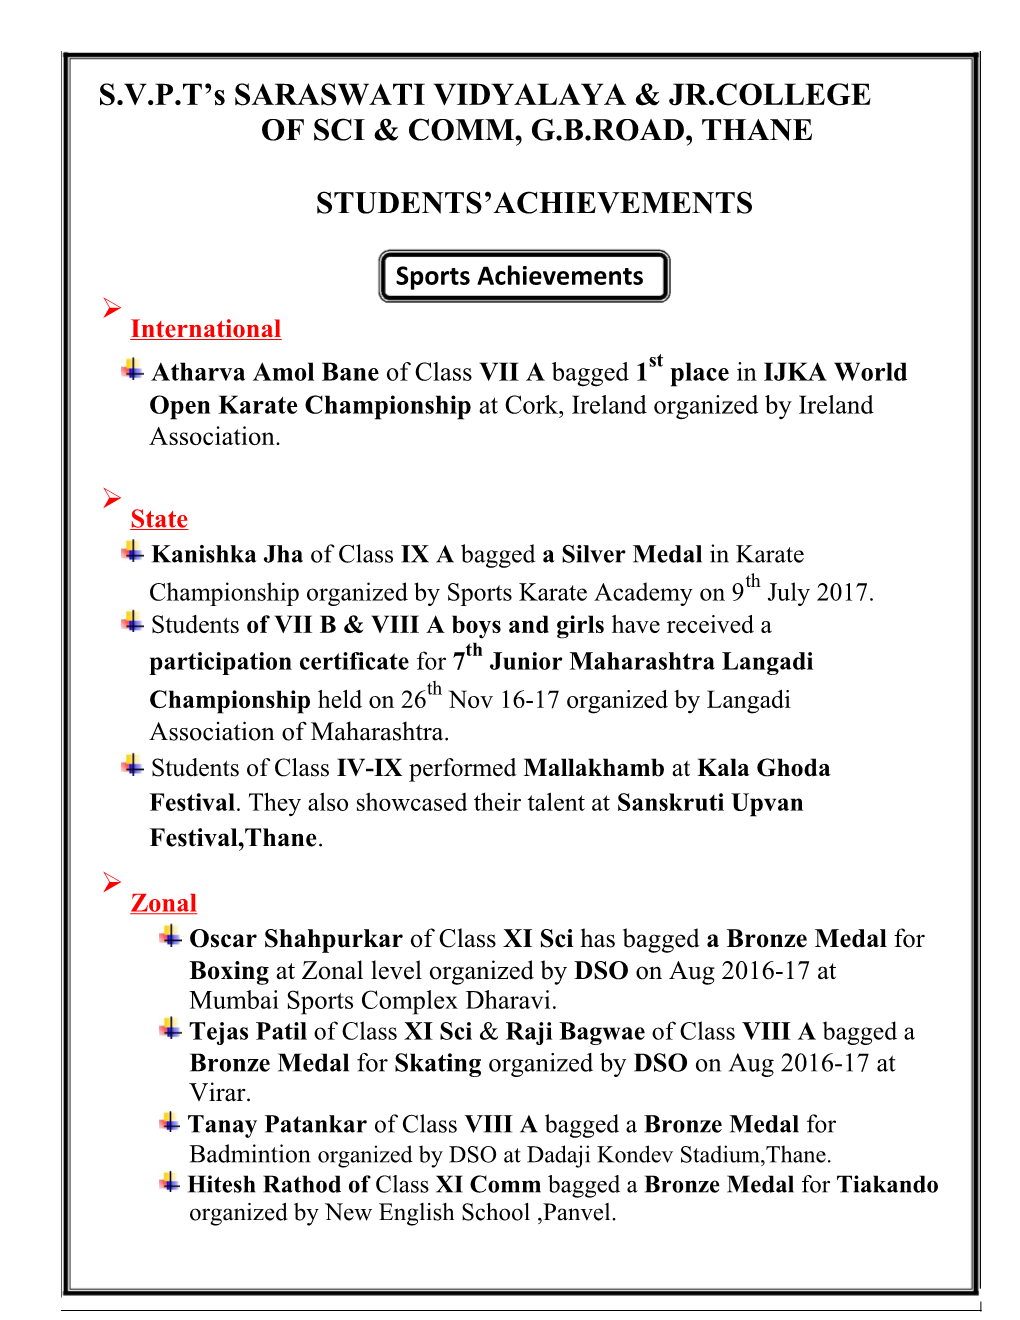 Students Achievements